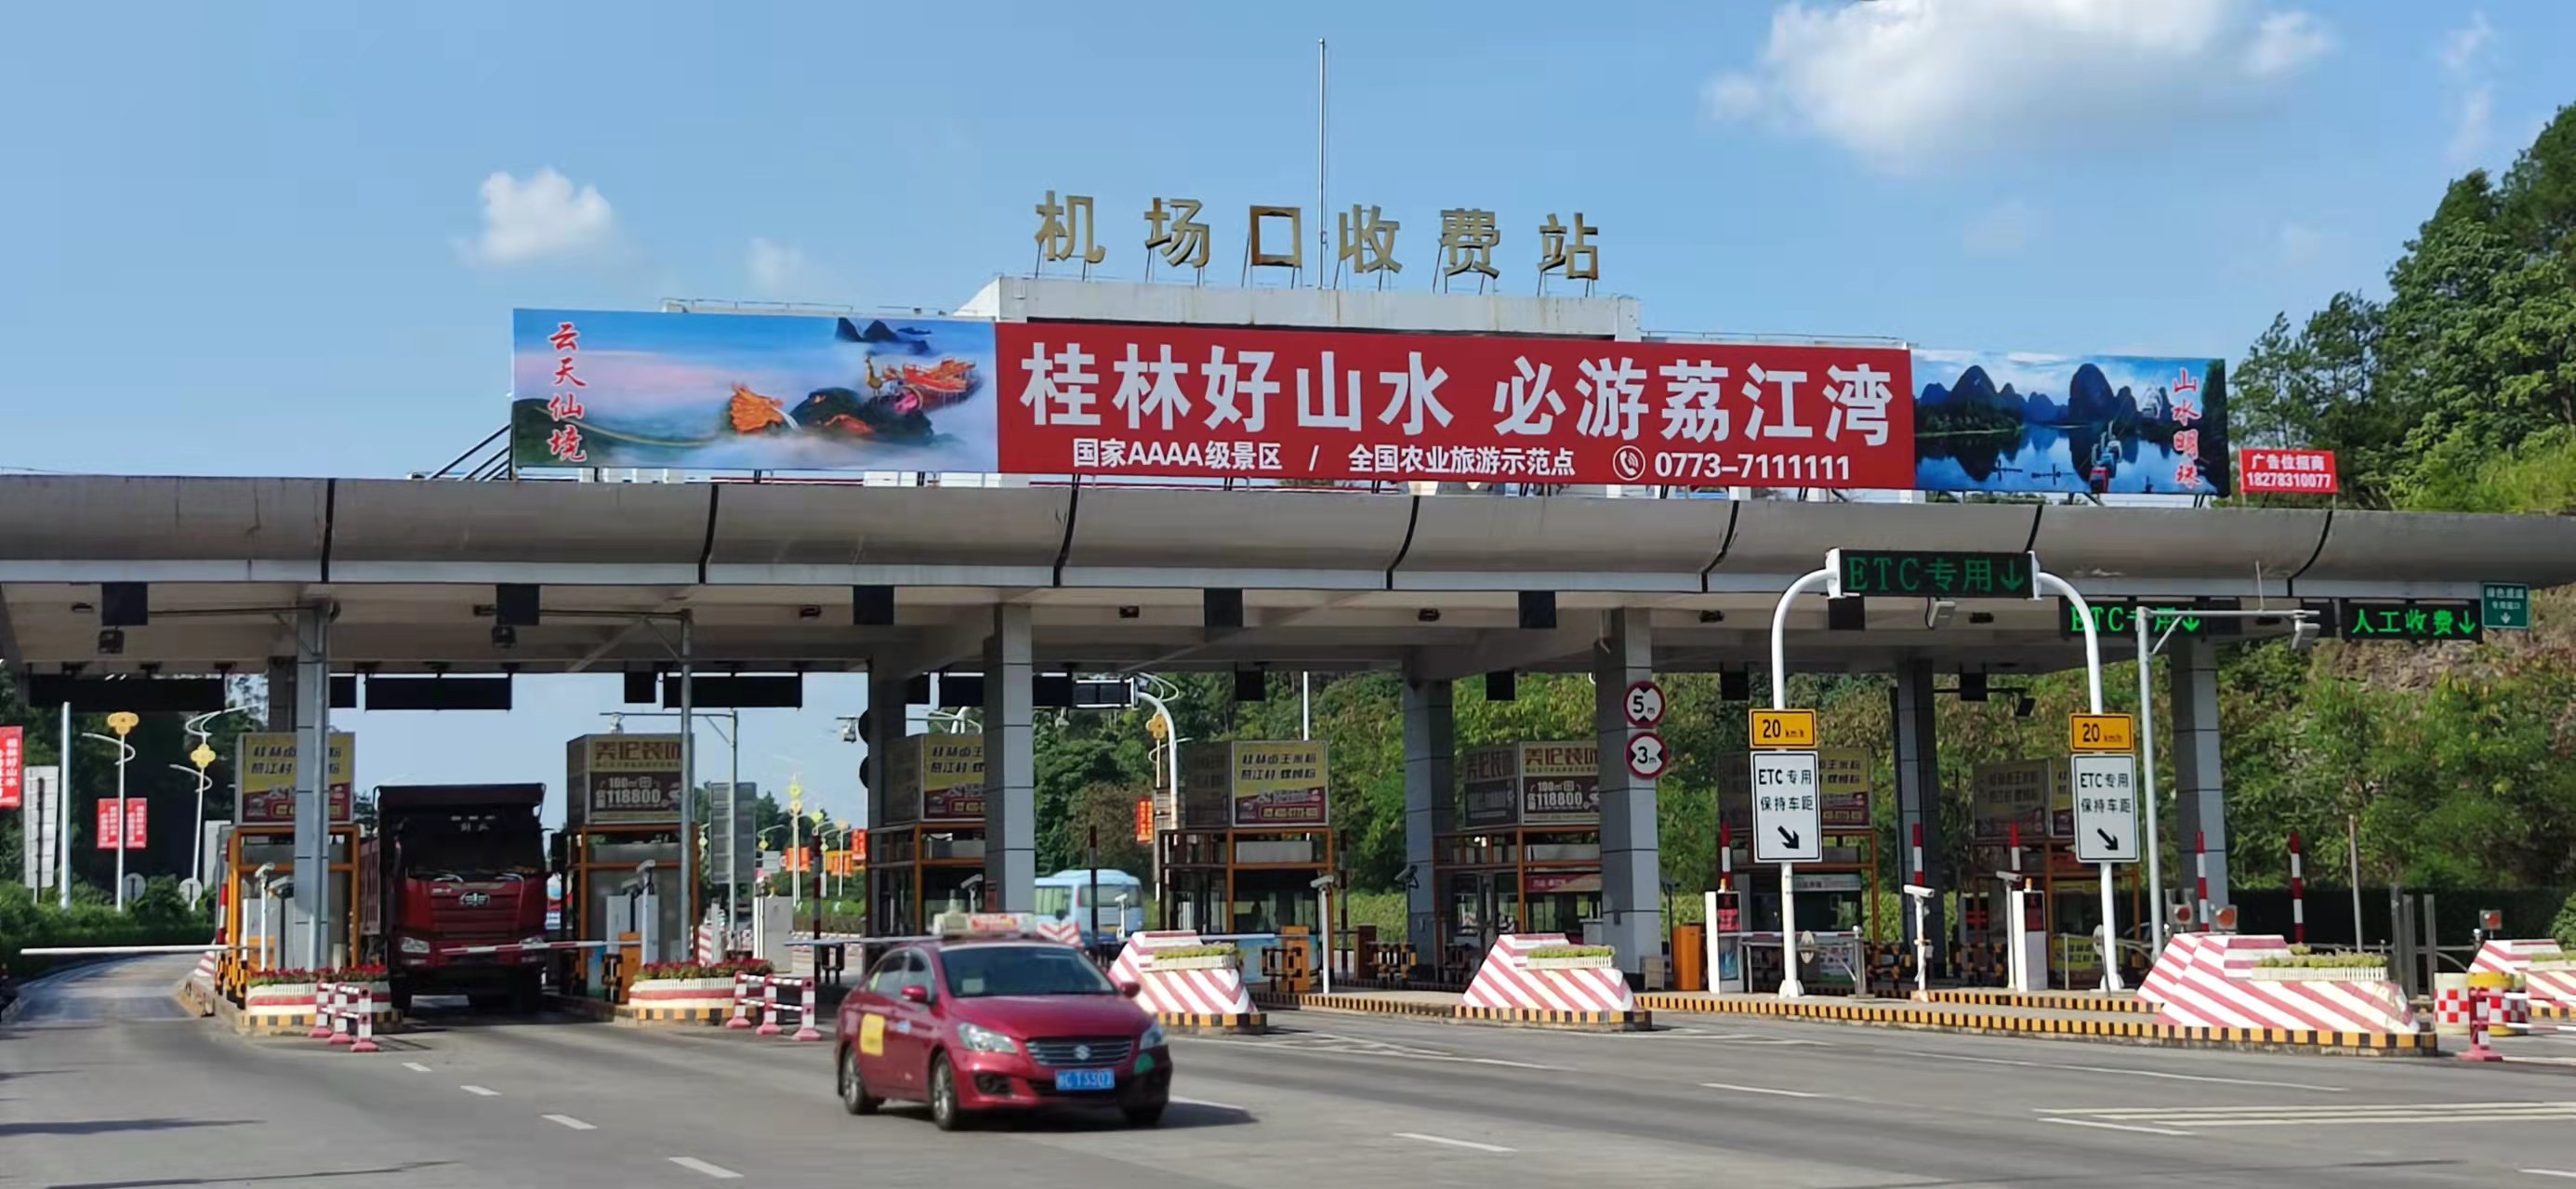 广西桂林机场口收费站高速公路媒体单面大牌